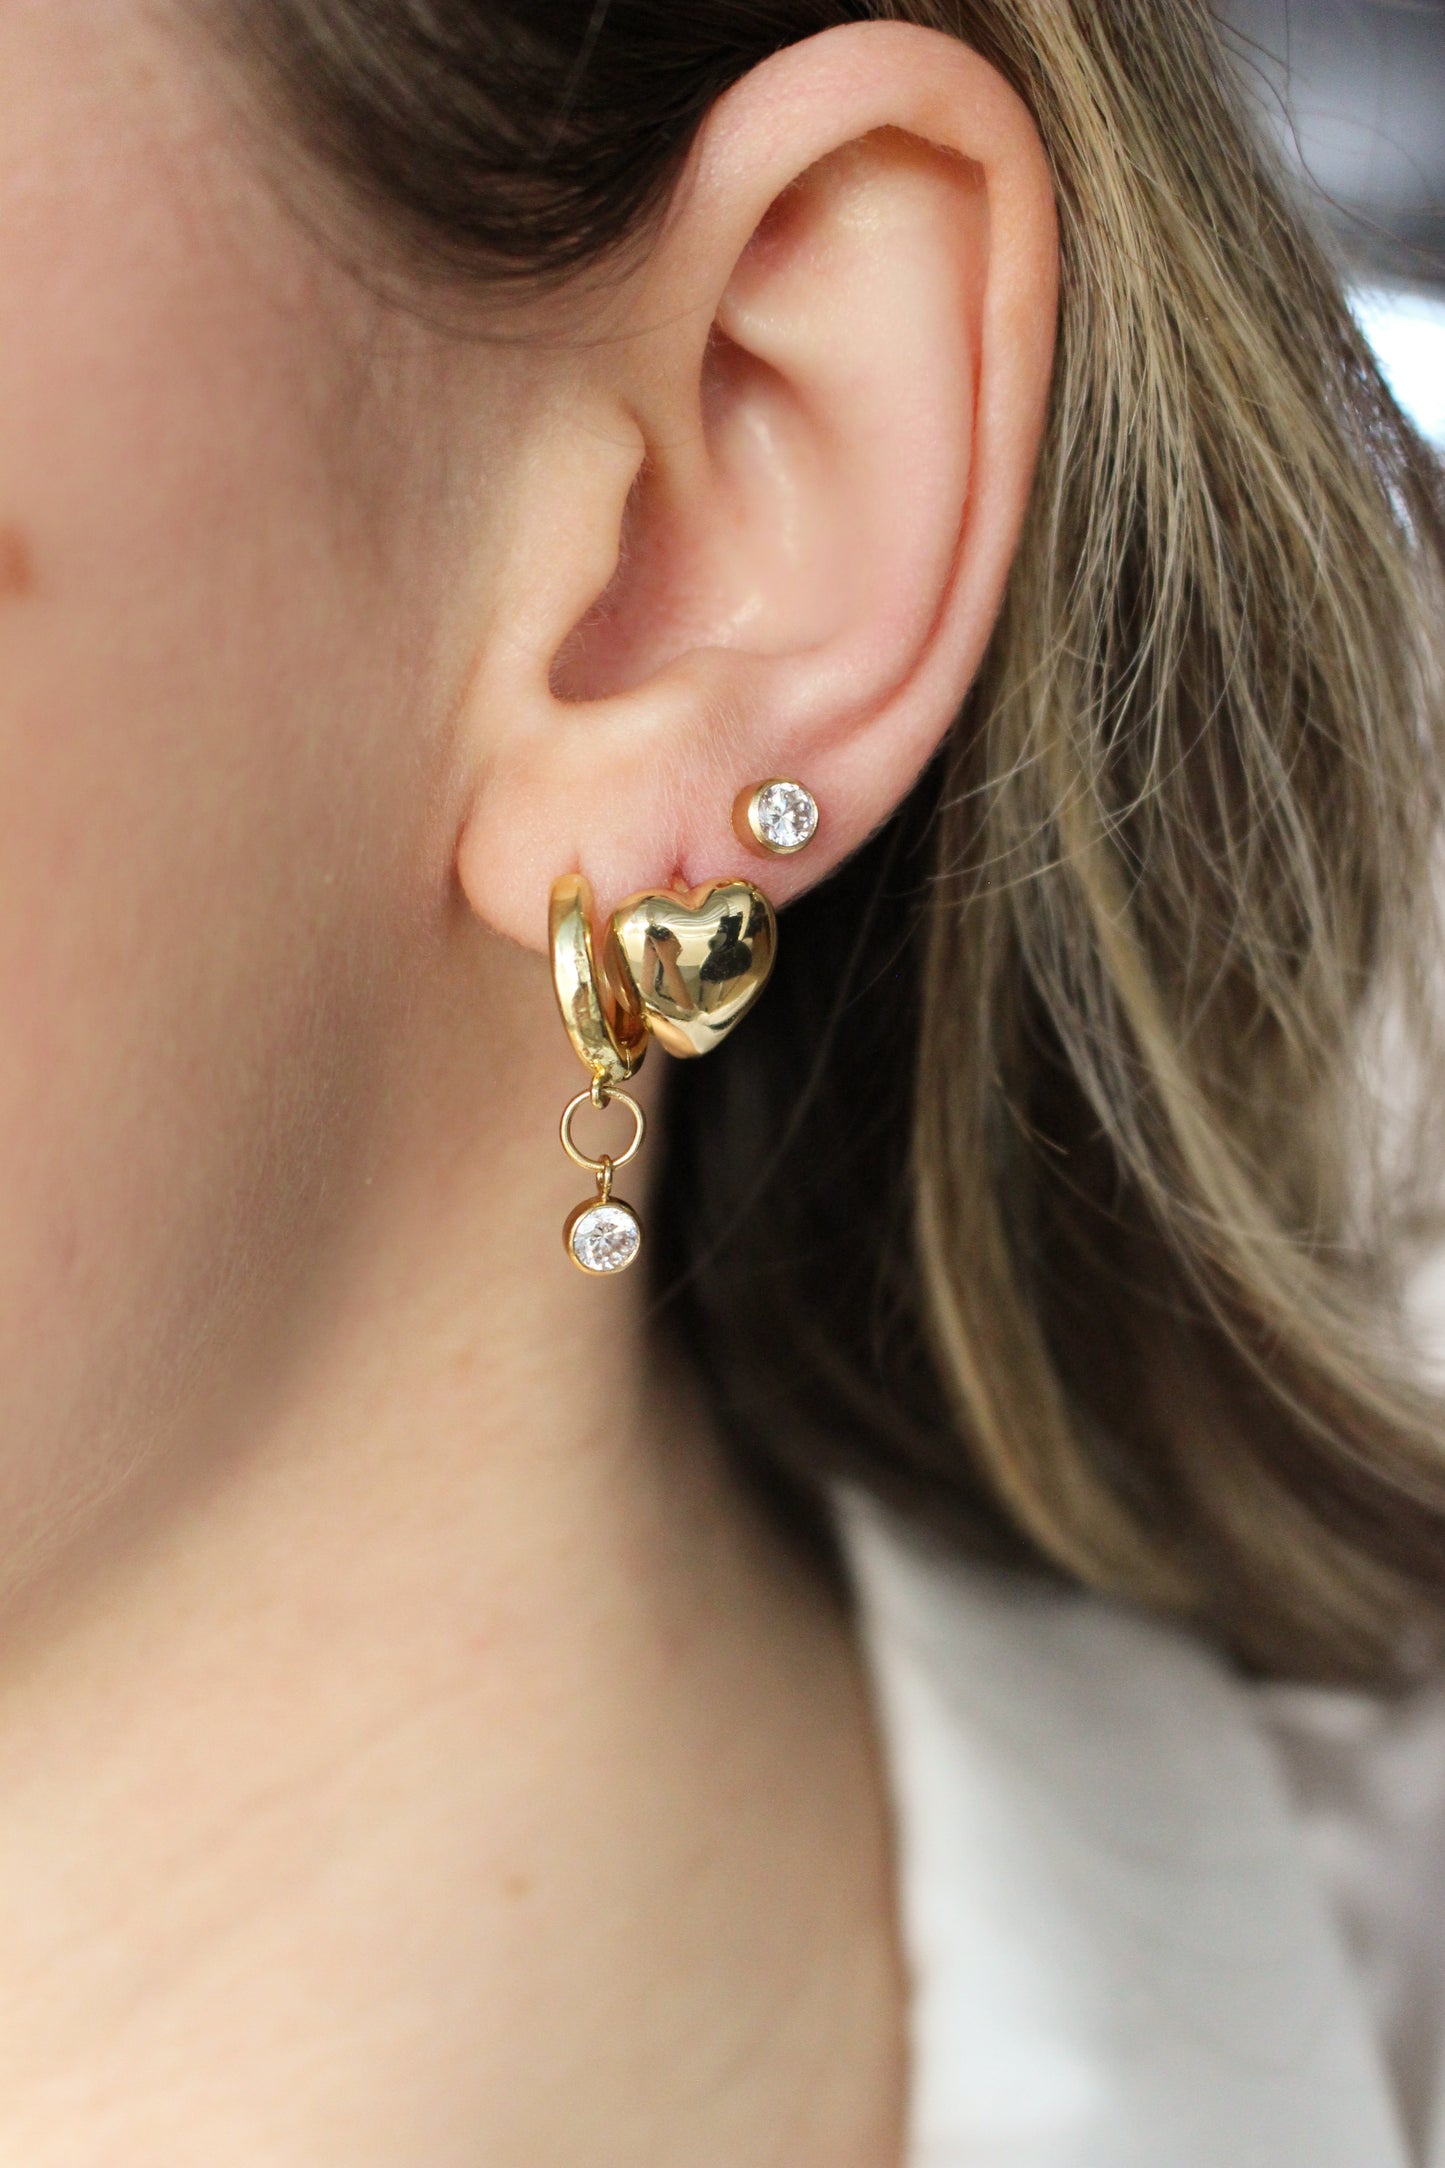 Boucles d'oreilles délicates en or rempli 14k avec zircone ronde ∙ Mini studs